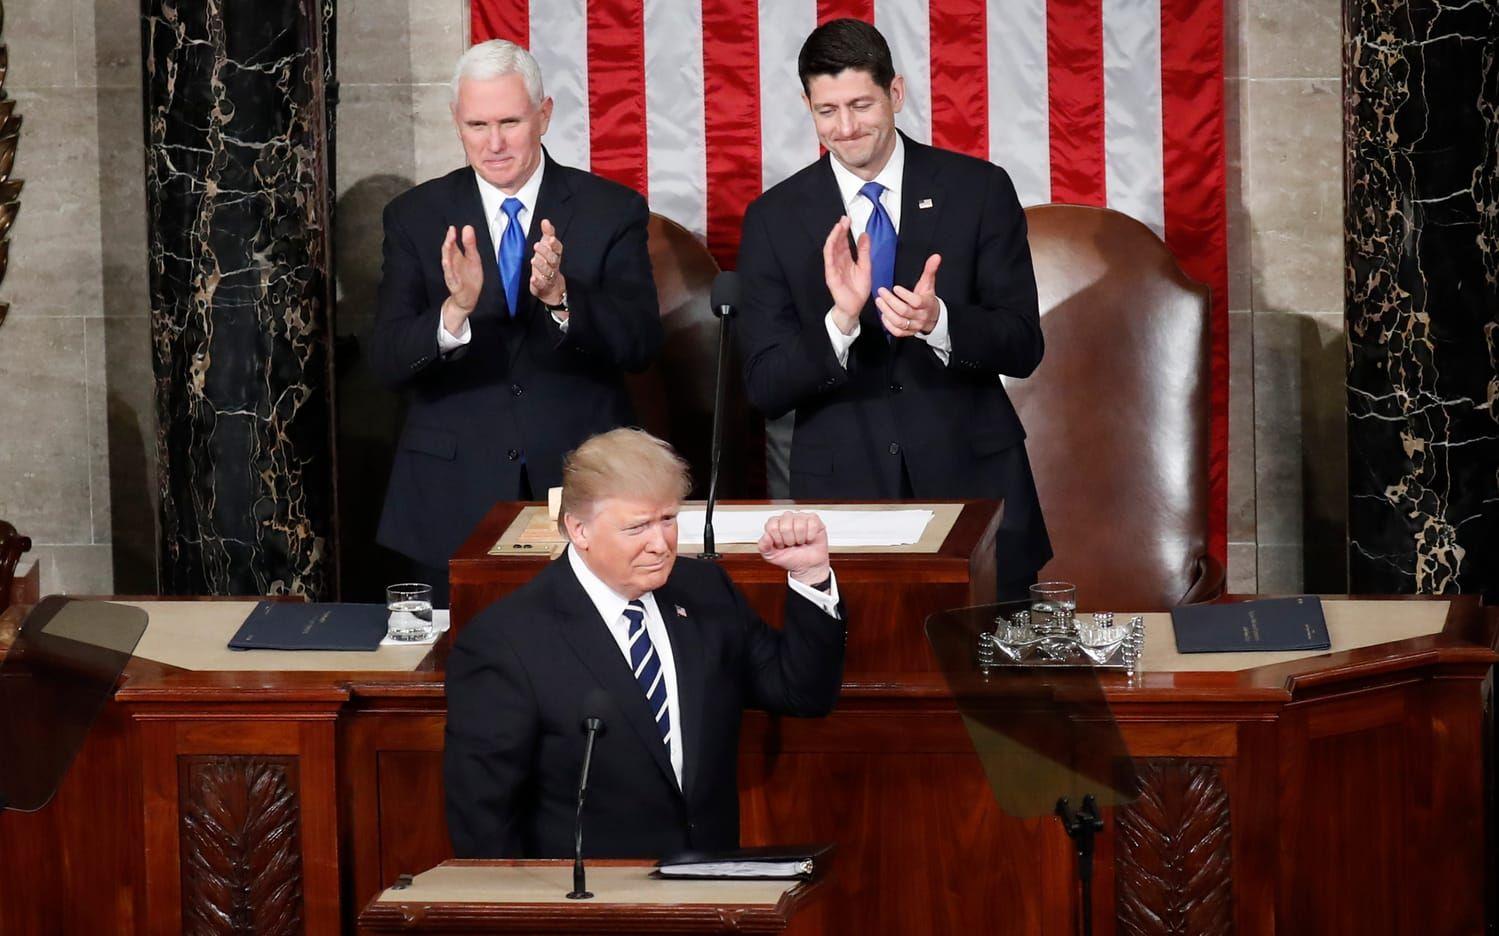 28 FEBRUARI: Donald Trump flankeras av Mike Pence och Paul Ryan under sitt första tal till kongressen. Han talade om att rusta militären, sänka skatter och immigration. Han uppmanade även amerikaner att handla och anställa amerikanskt. Foto: TT